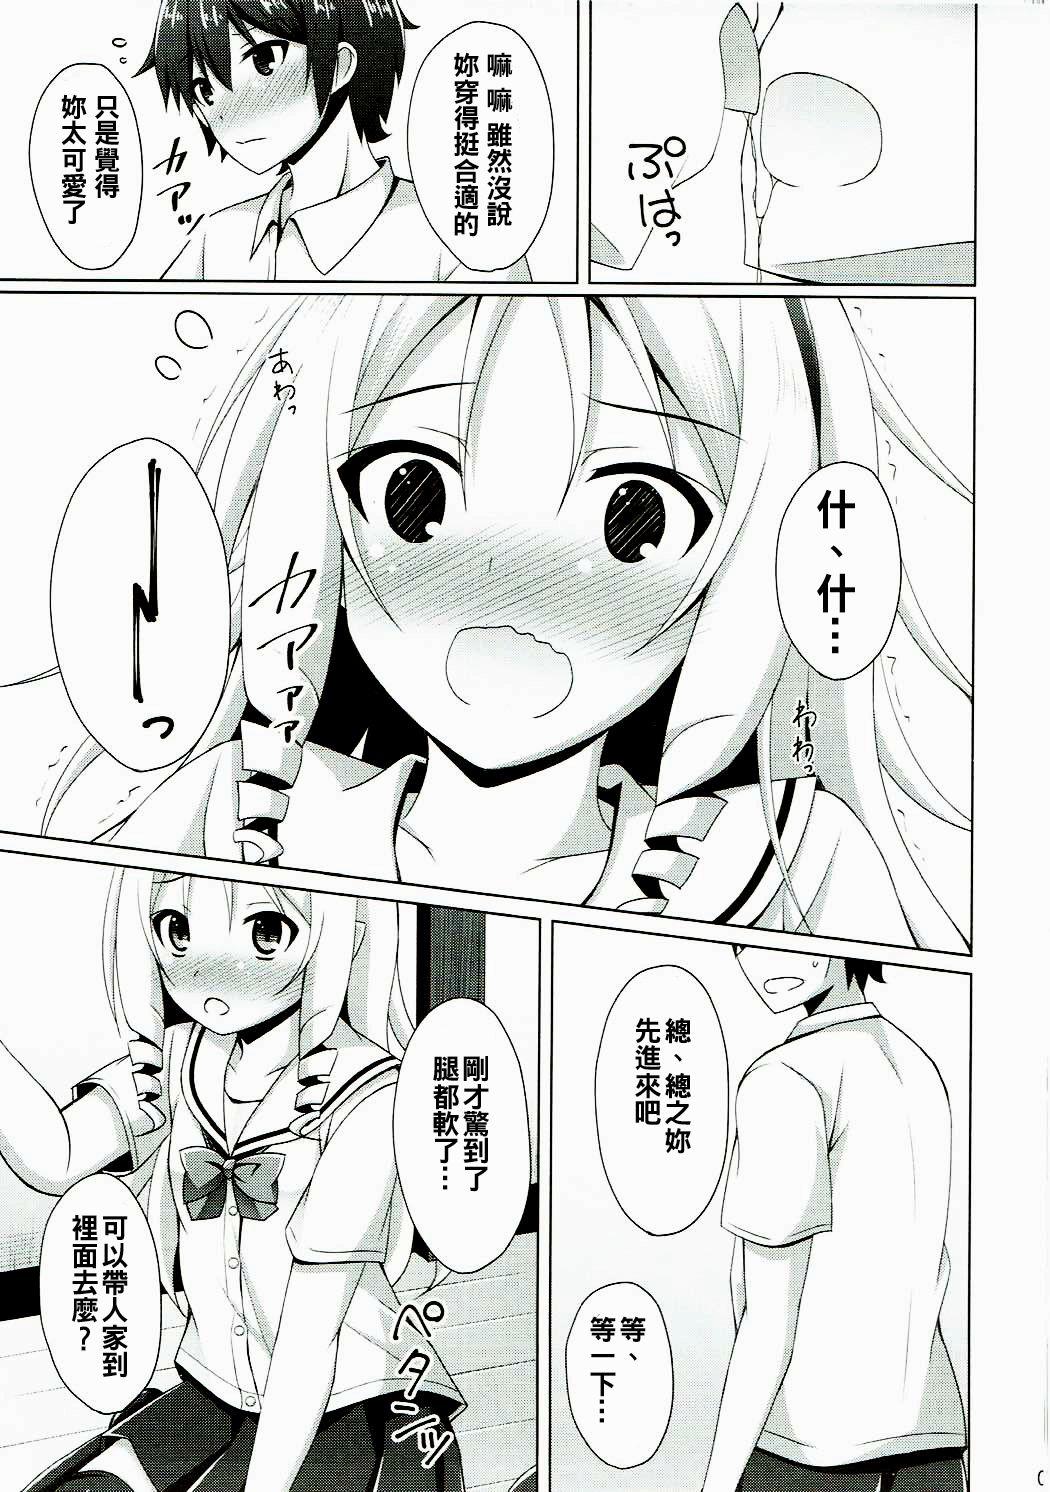 Young Petite Porn Elf-chan to Cosplay Ecchi - Eromanga sensei Nuru Massage - Page 7